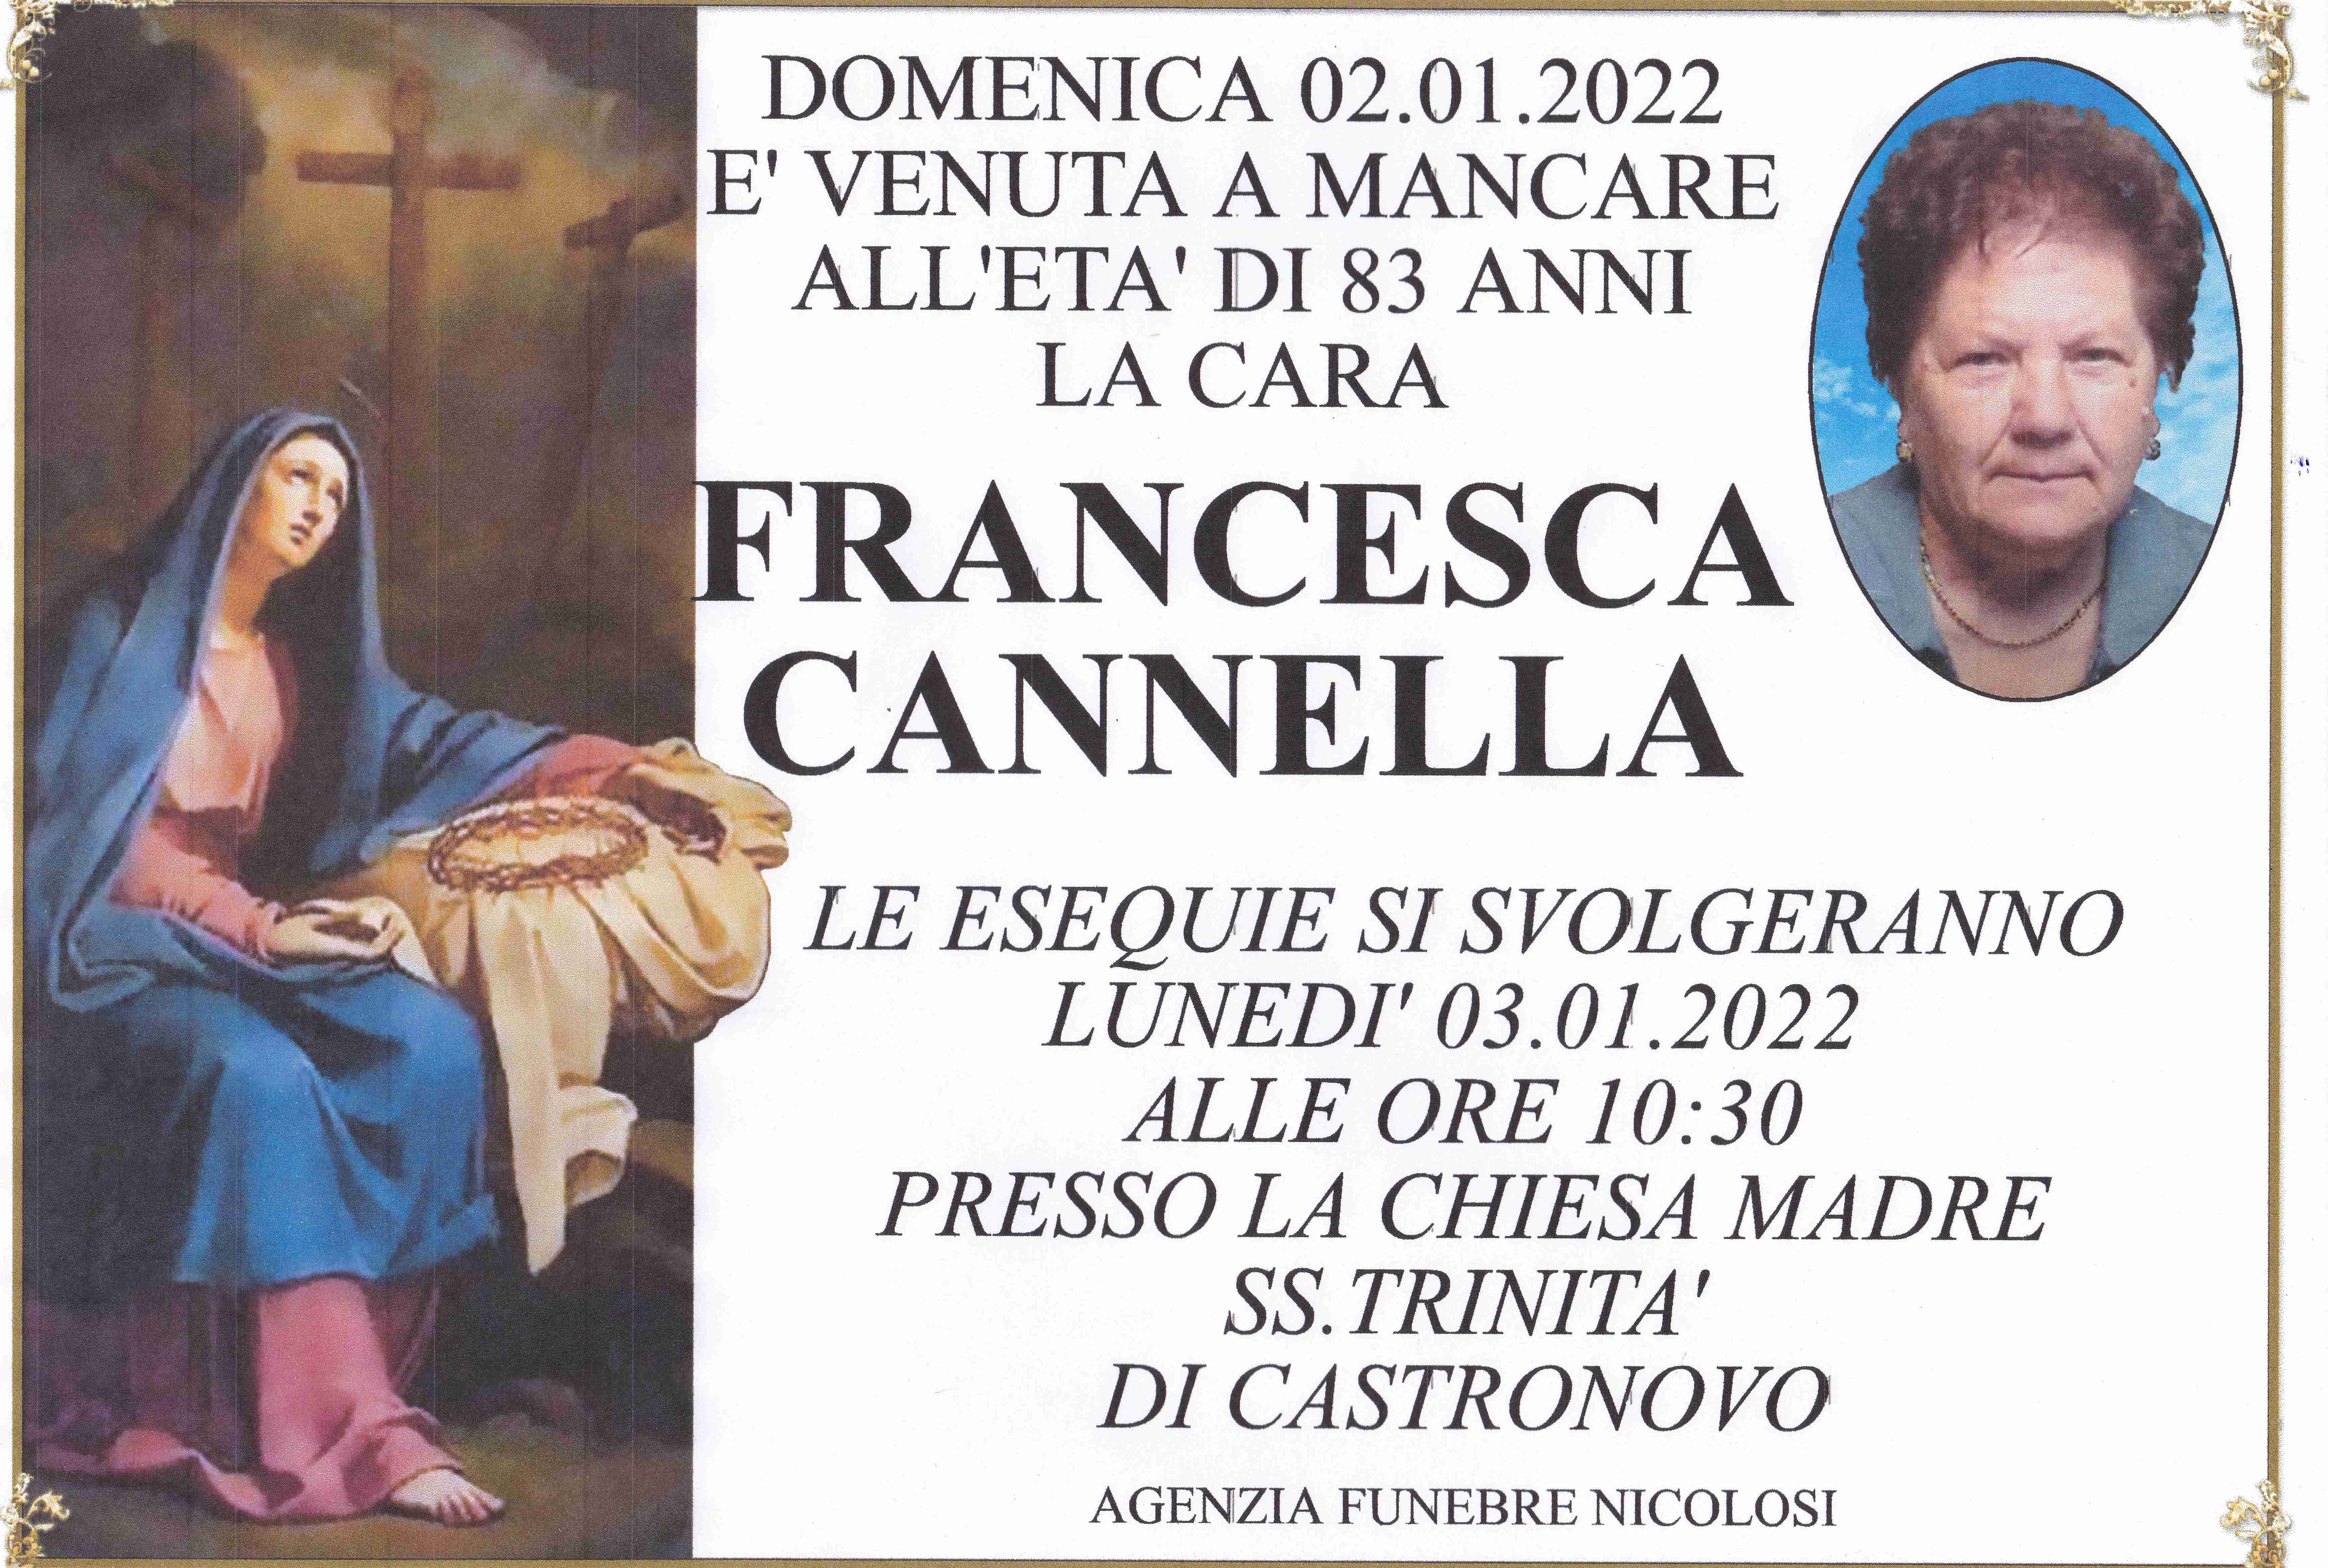 Francesca Cannella